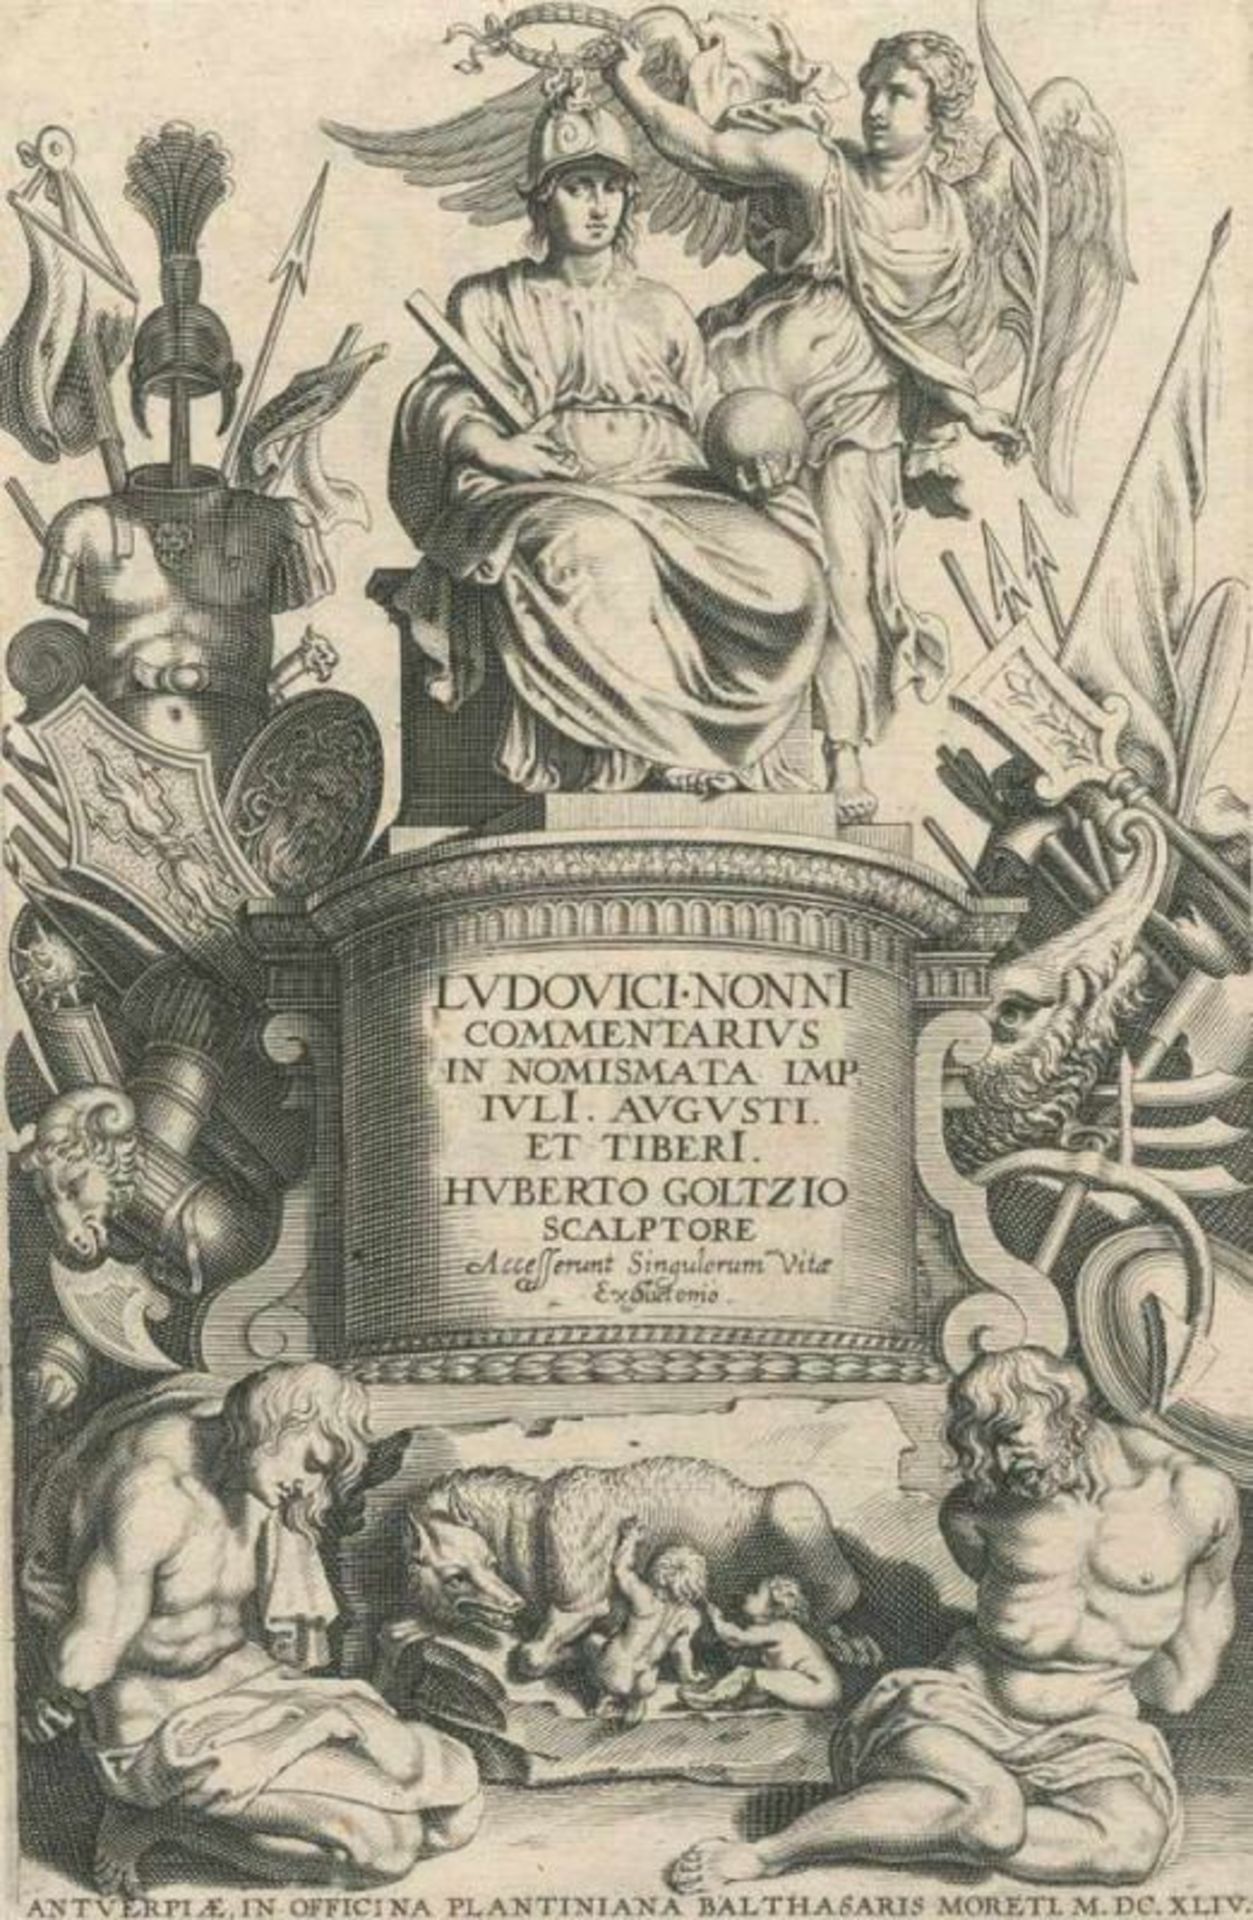 Nonnus,L.Commentarius In Nomismata Imp. Iuli. Augusti et Tiberi. Antwerpen, Plantin 1644. Fol. Mit